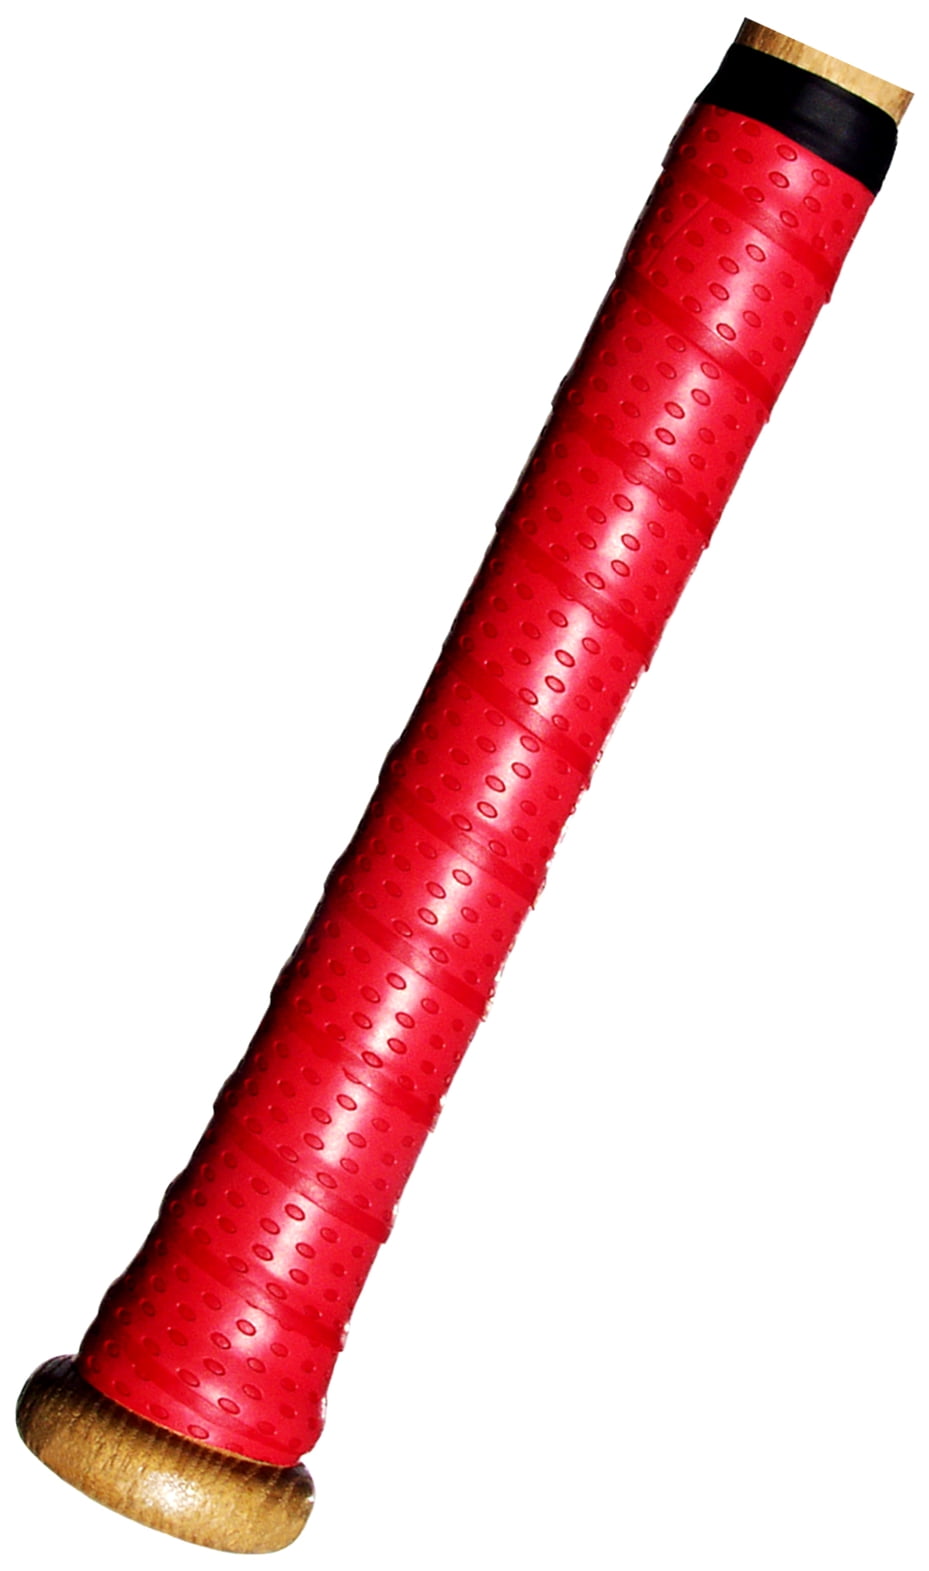 Easton Unisex Hyperskin BaseCamo Bat Grip Tape 1.2mm Baseball Softball Red 